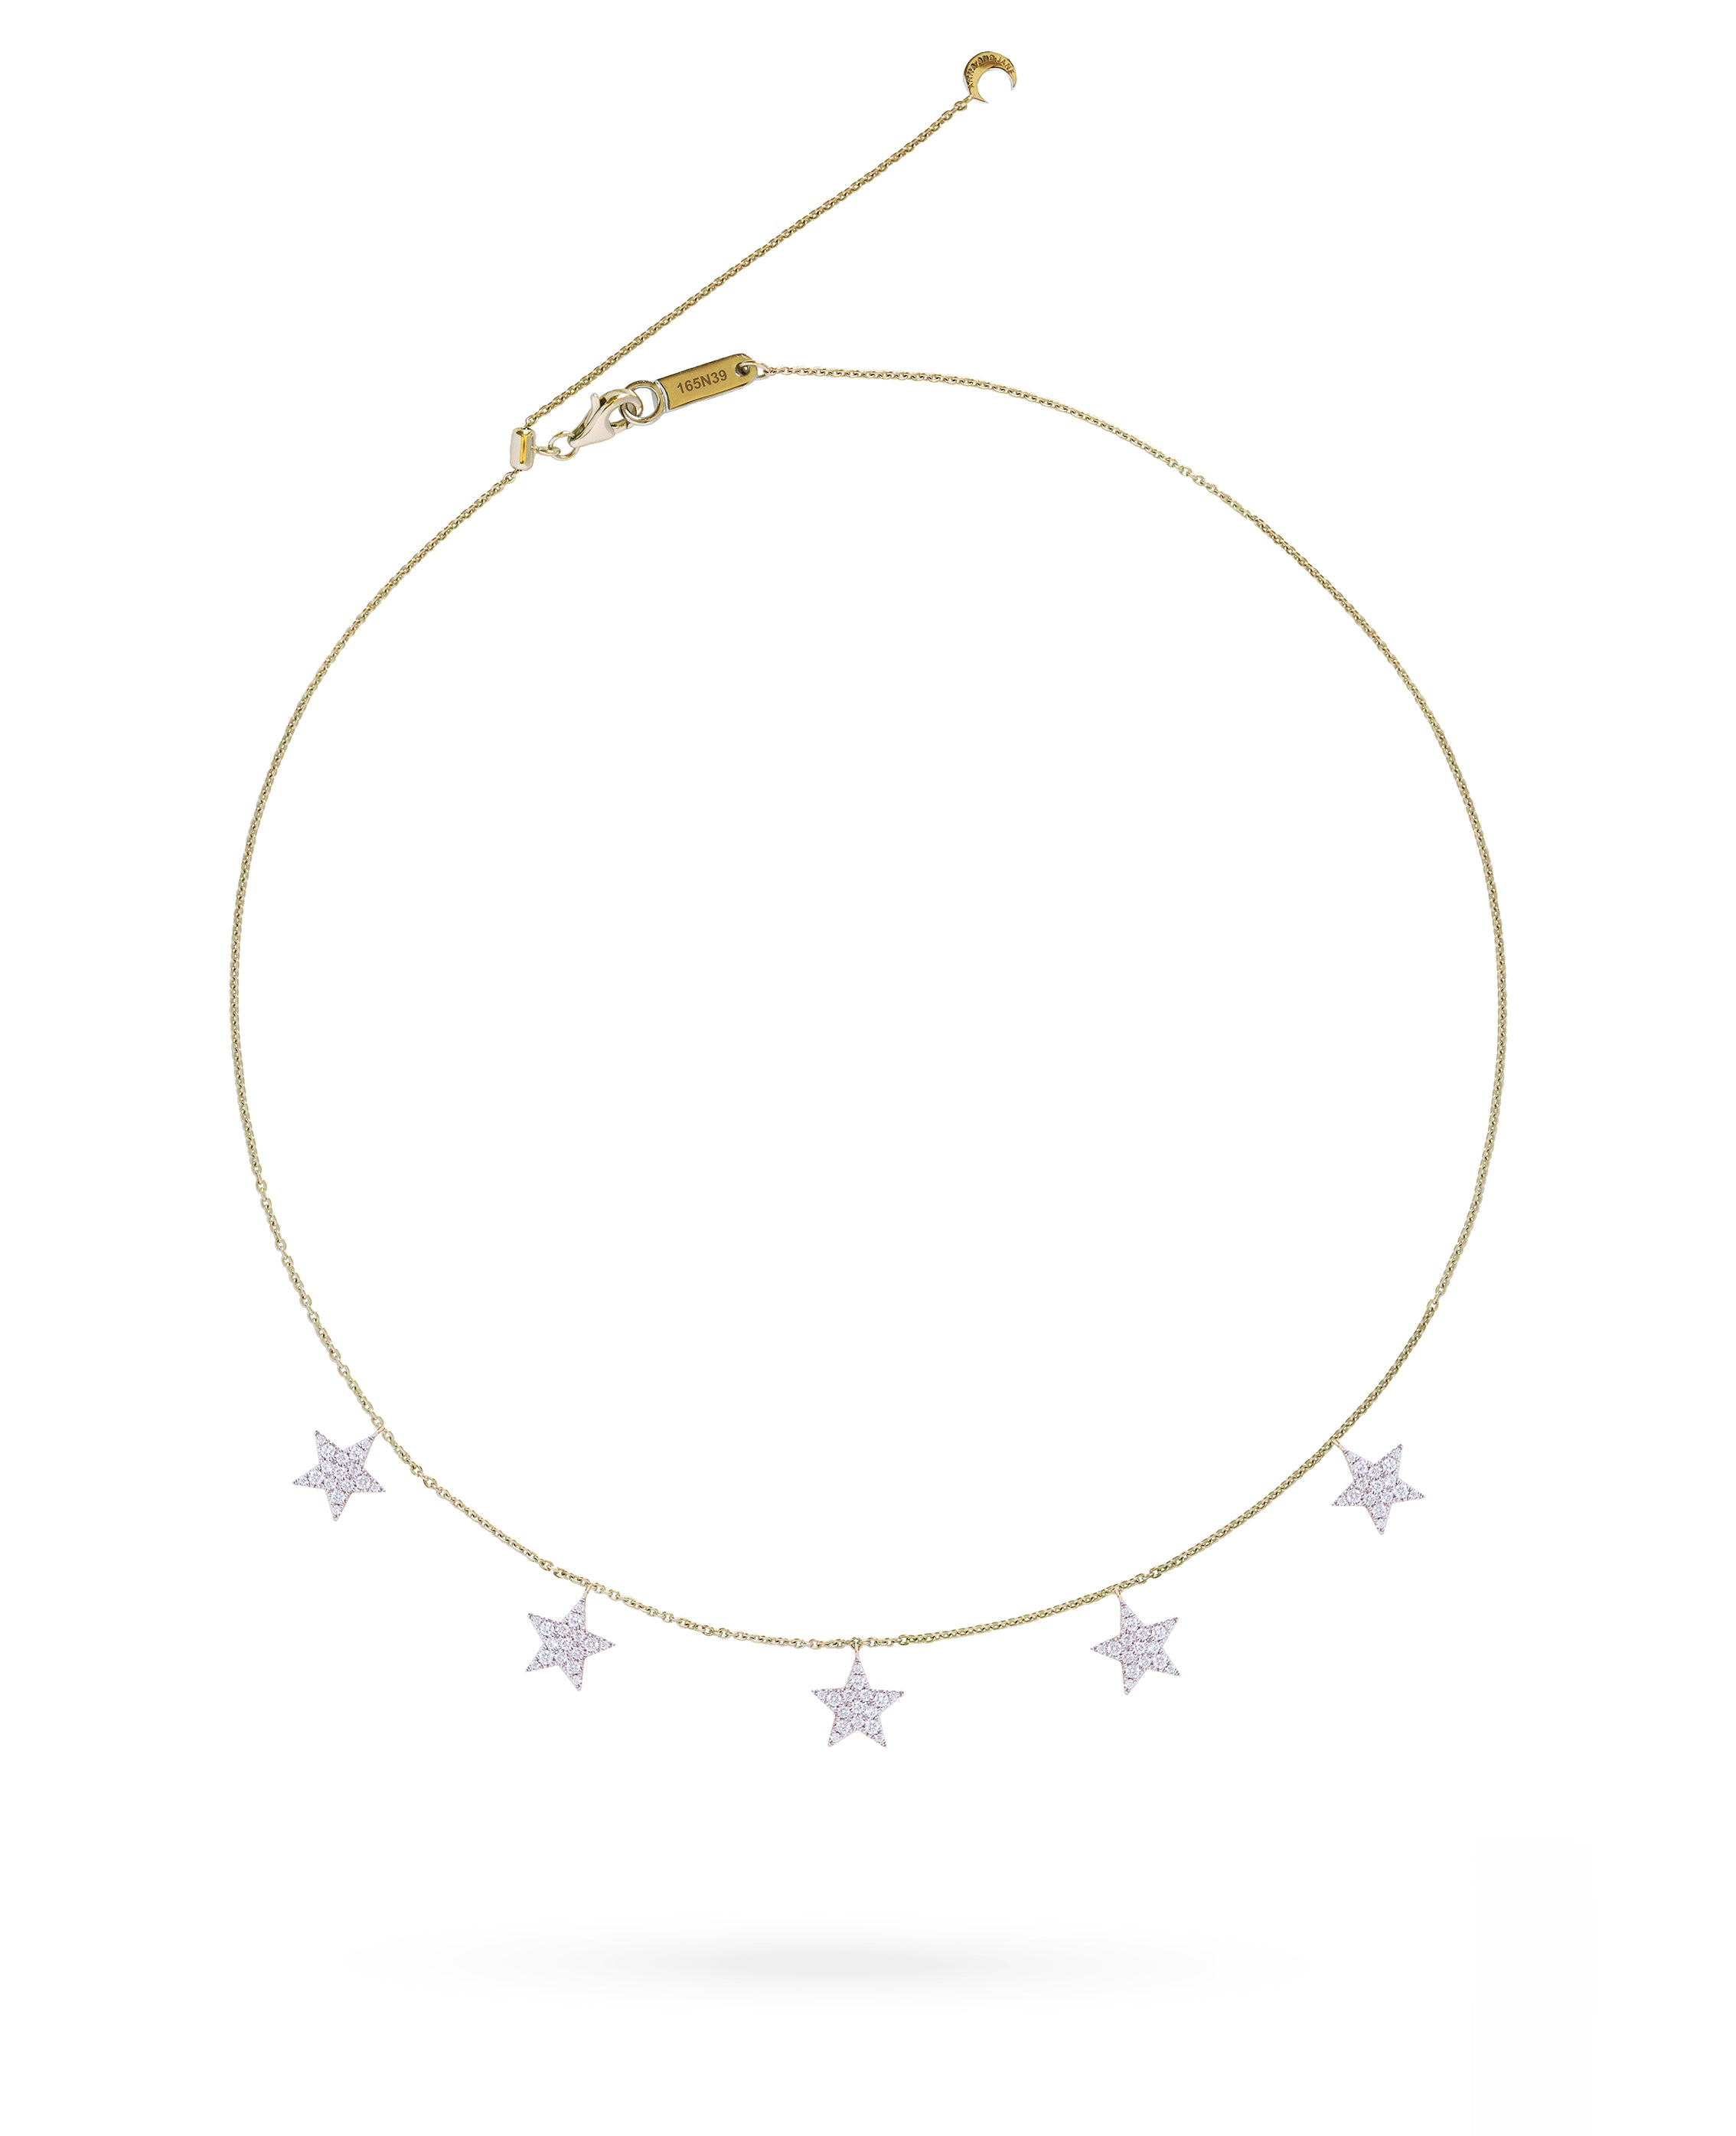 5 Stars Diamond Necklace in 18K Gold